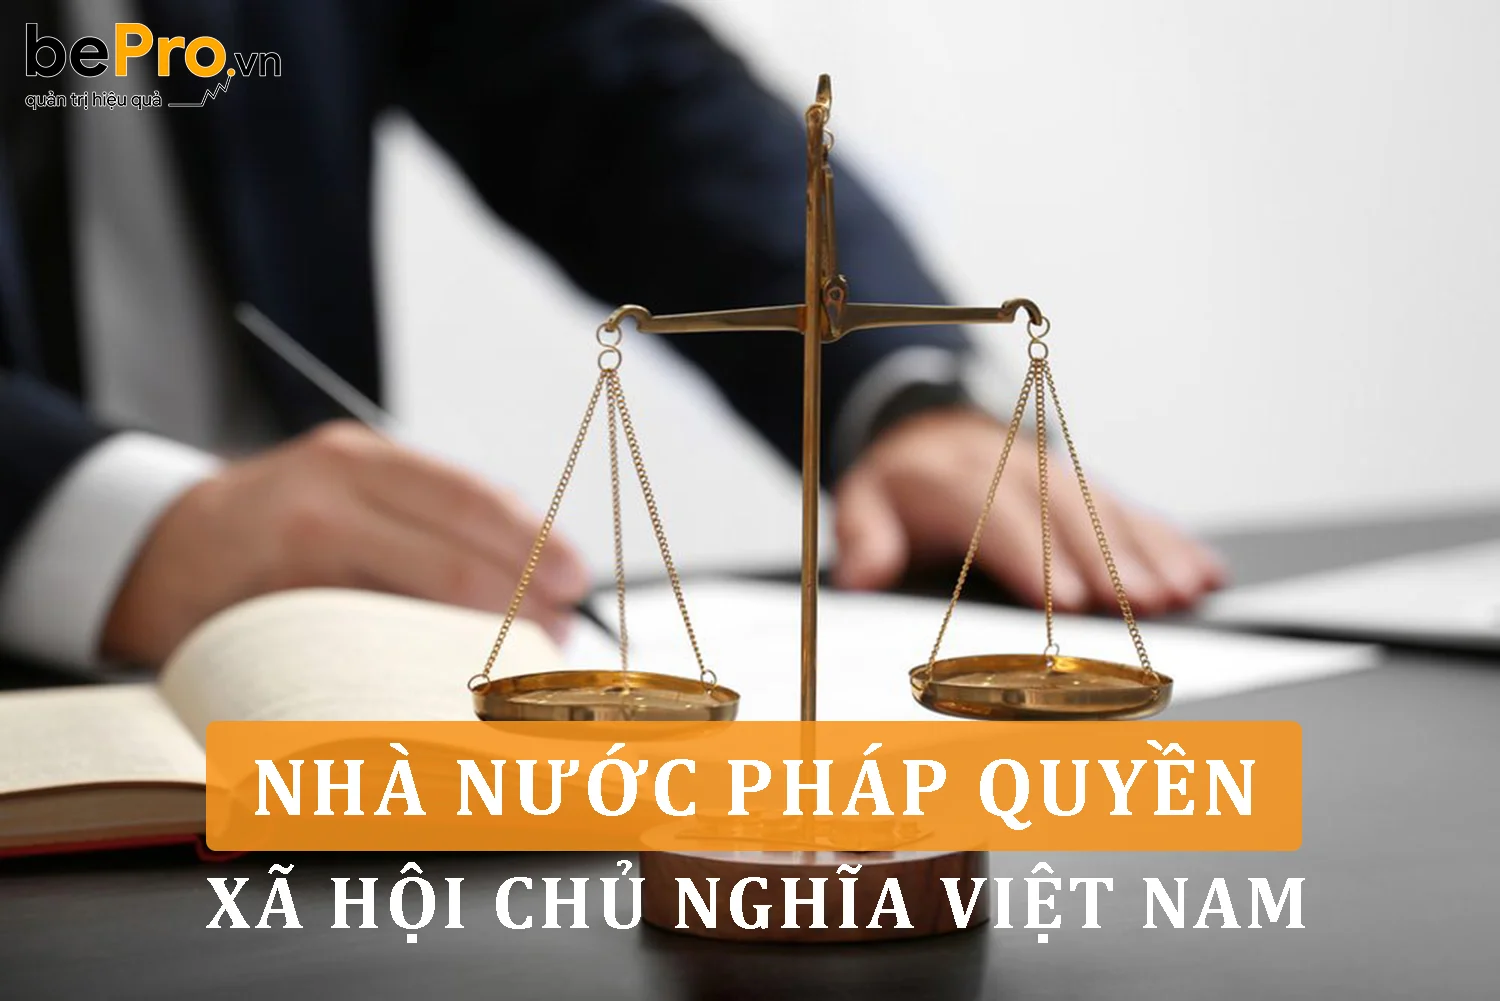 Nhà nước pháp quyền xã hội chủ nghĩa Việt Nam hiện nay